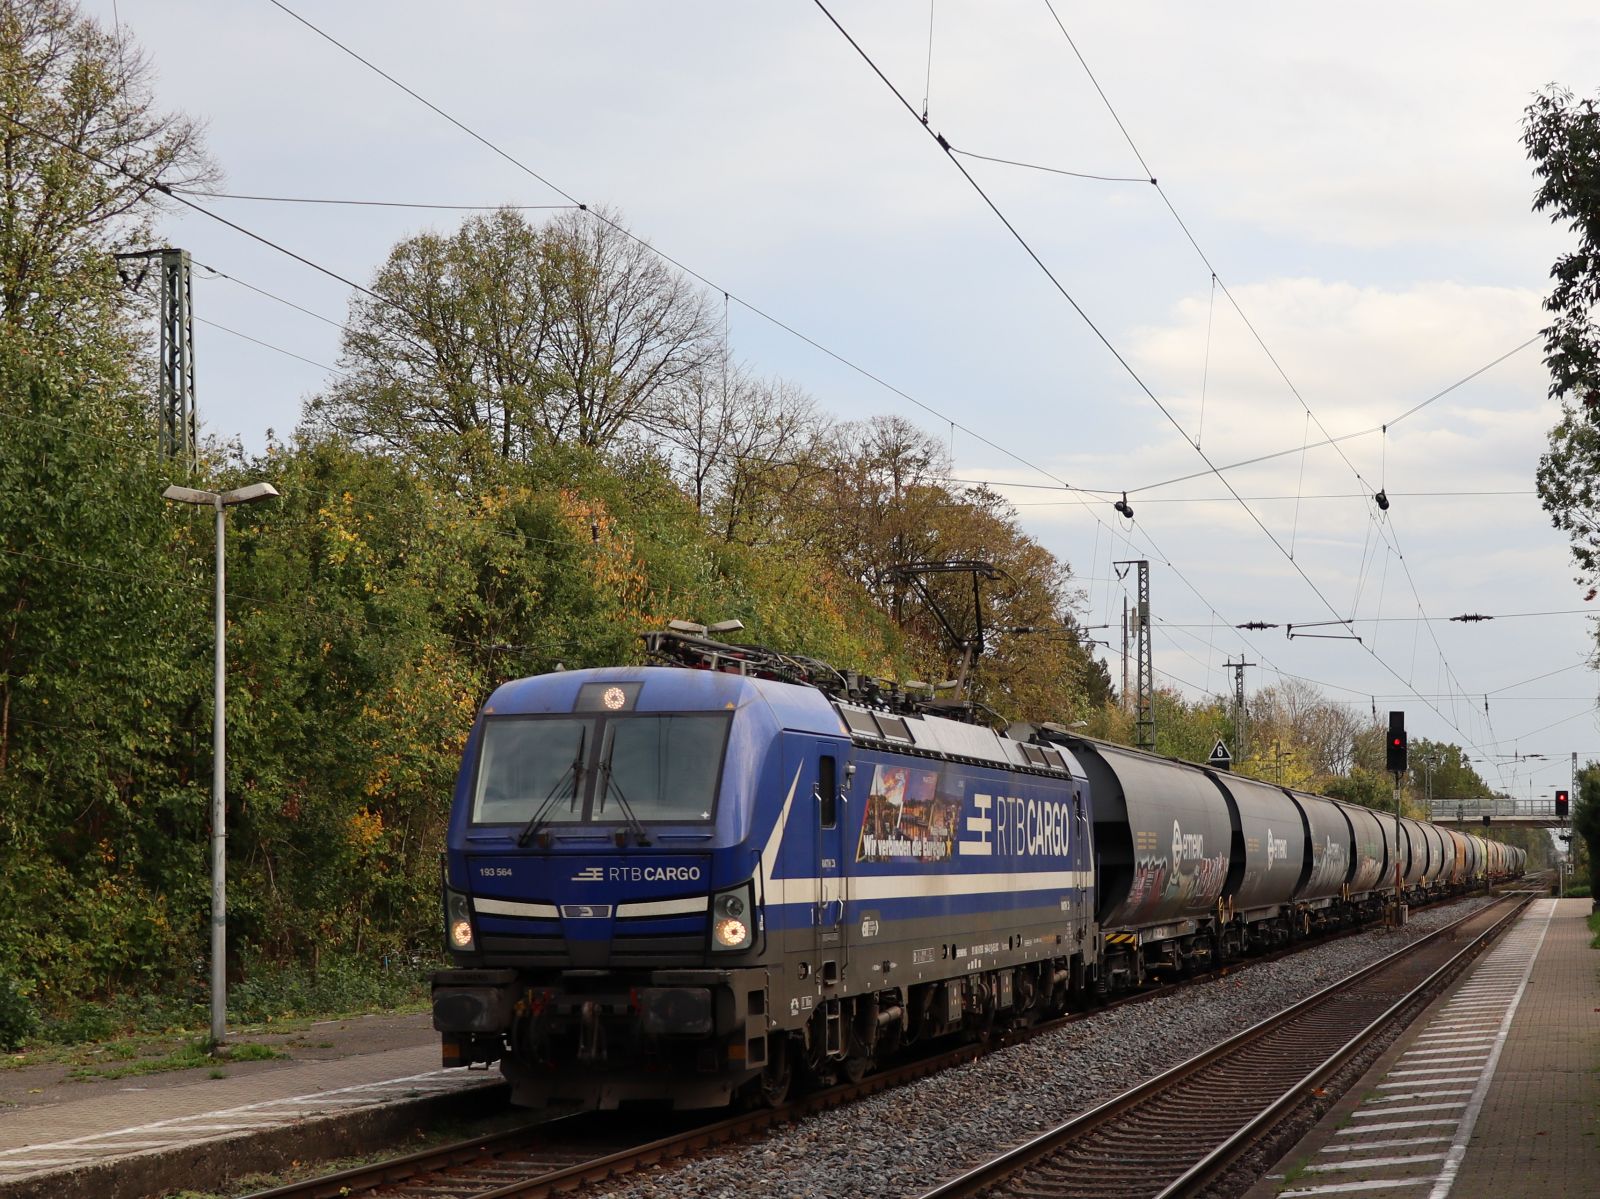 Rurtalbahn Cargo Lokomotive 193 564-2 Gleis 2 Bahnhof Empel-Rees 03-11-2022.

Rurtalbahn Cargo locomotief 193 564-2 spoor 2 station Empel-Rees 03-11-2022.